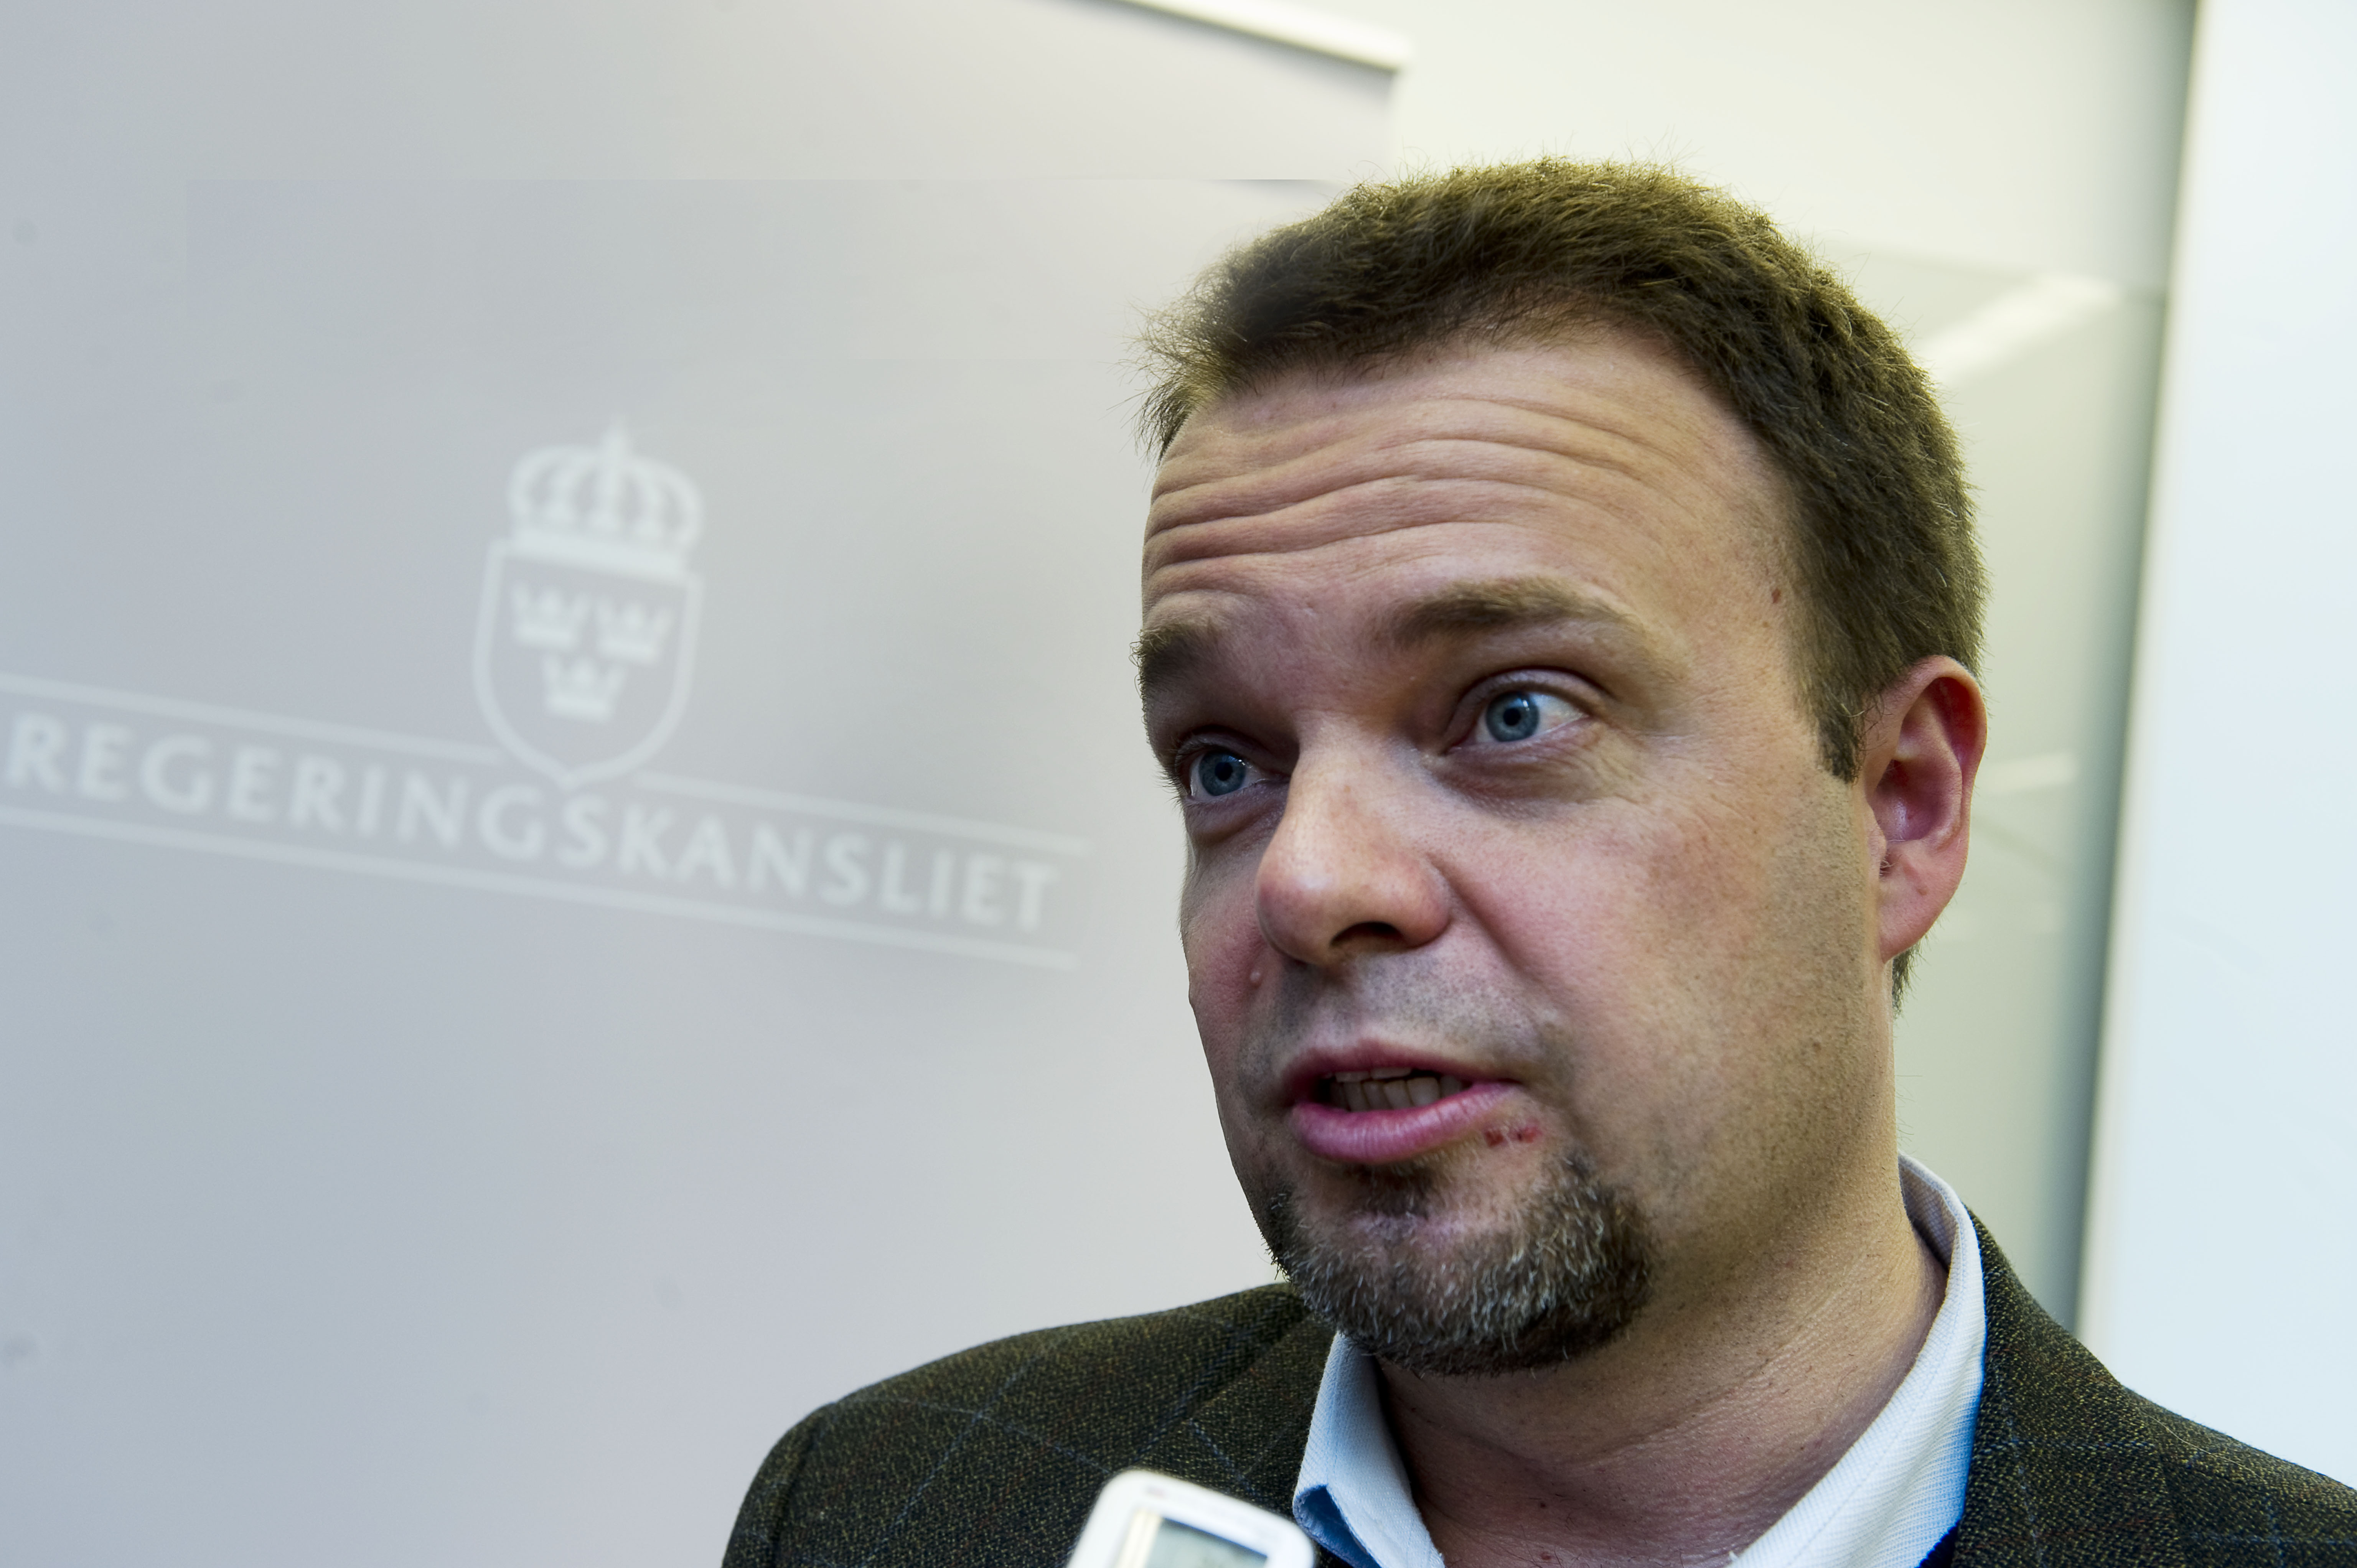 Register, Alliansen, Politik, Sven Otto Littorin, Riksdagsvalet 2010, Jobb, Ungdomsarbetslöshet